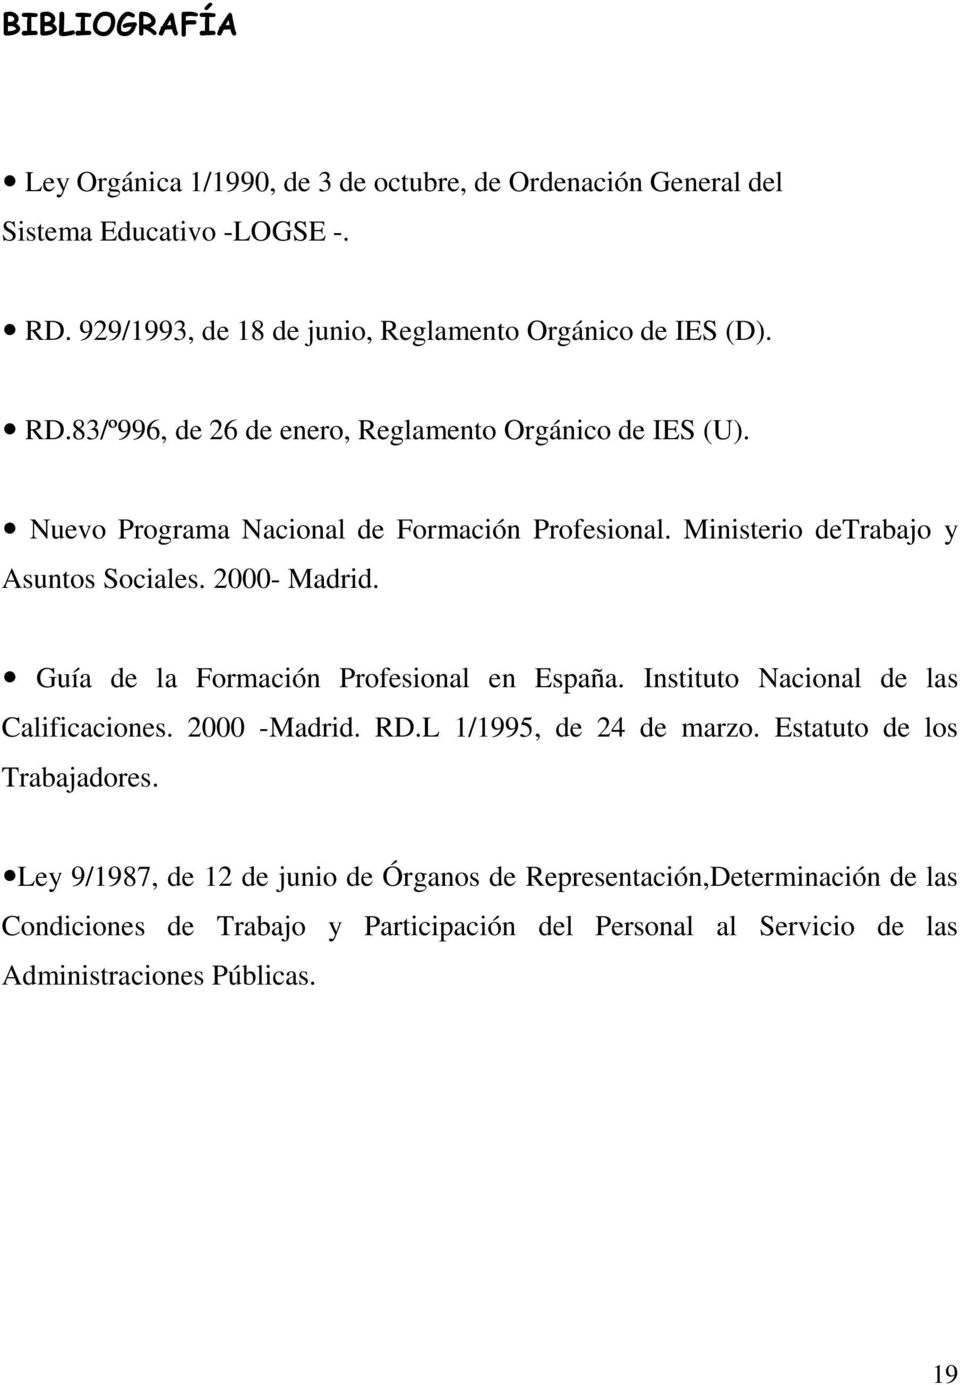 Instituto Nacional de las Calificaciones. 2000 -Madrid. RD.L 1/1995, de 24 de marzo. Estatuto de los Trabajadores.